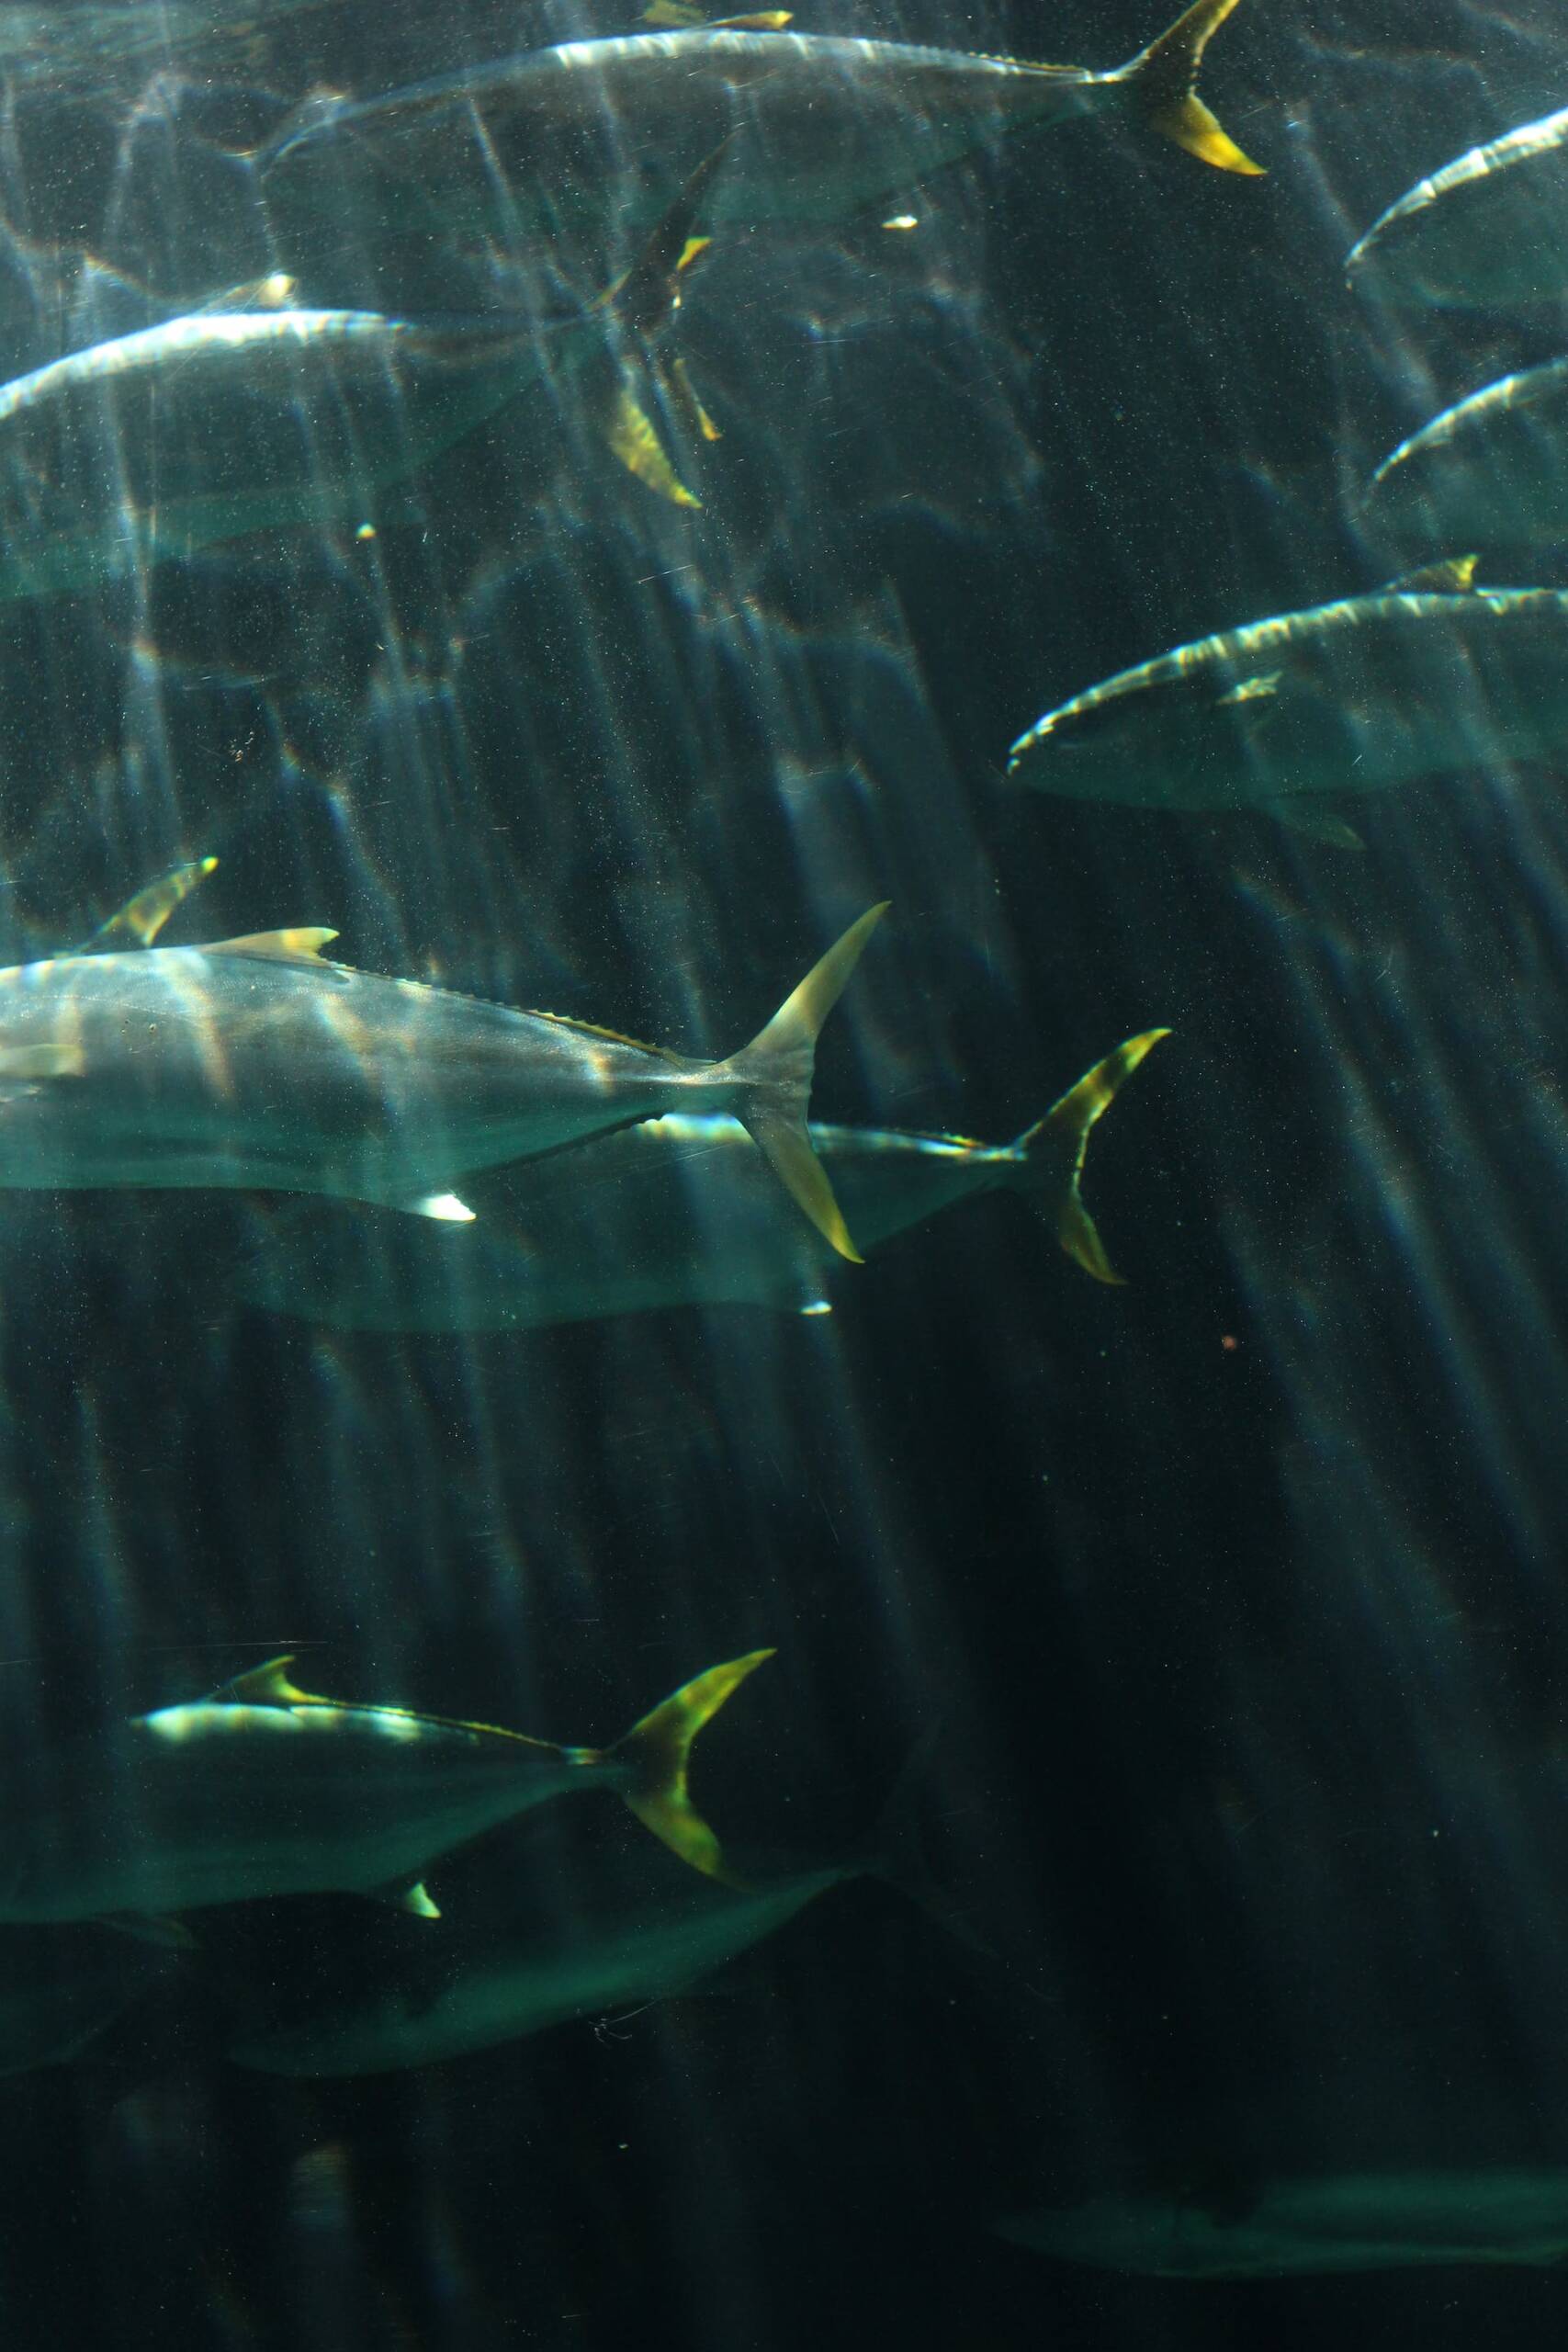 Group of Tuna fish at sea